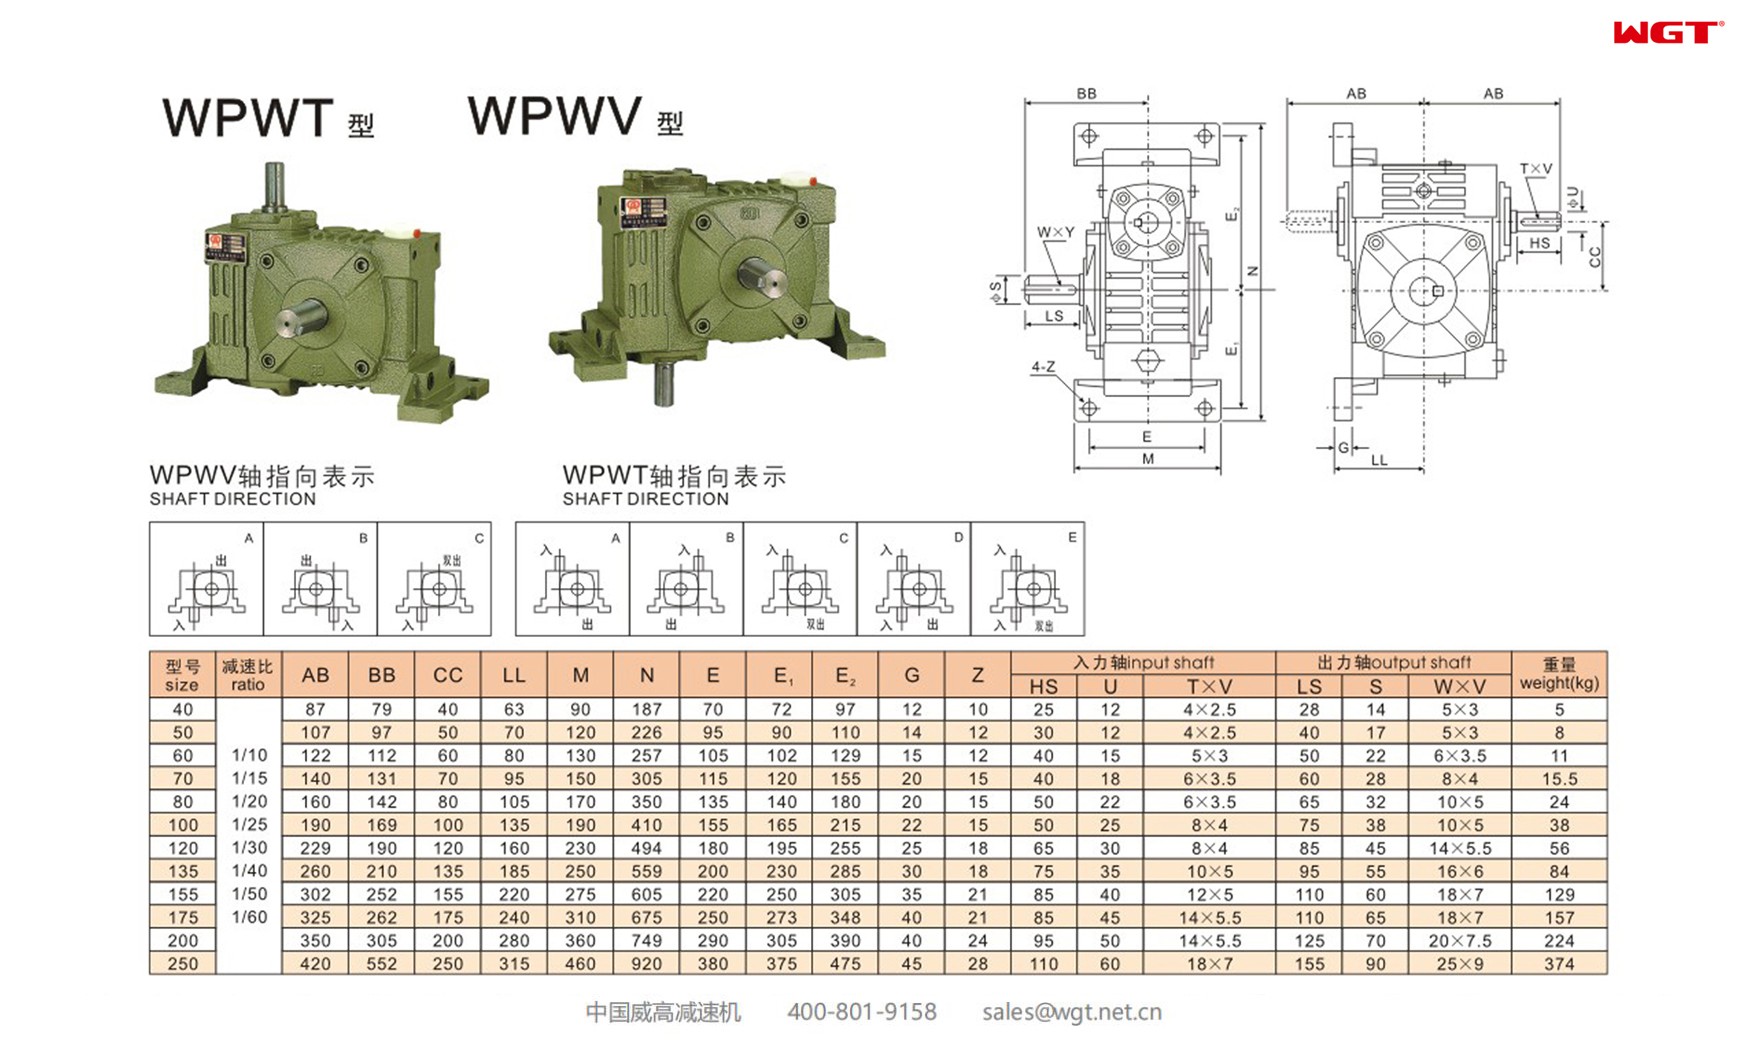 WPWT120 worm gear reducer universal speed reducer